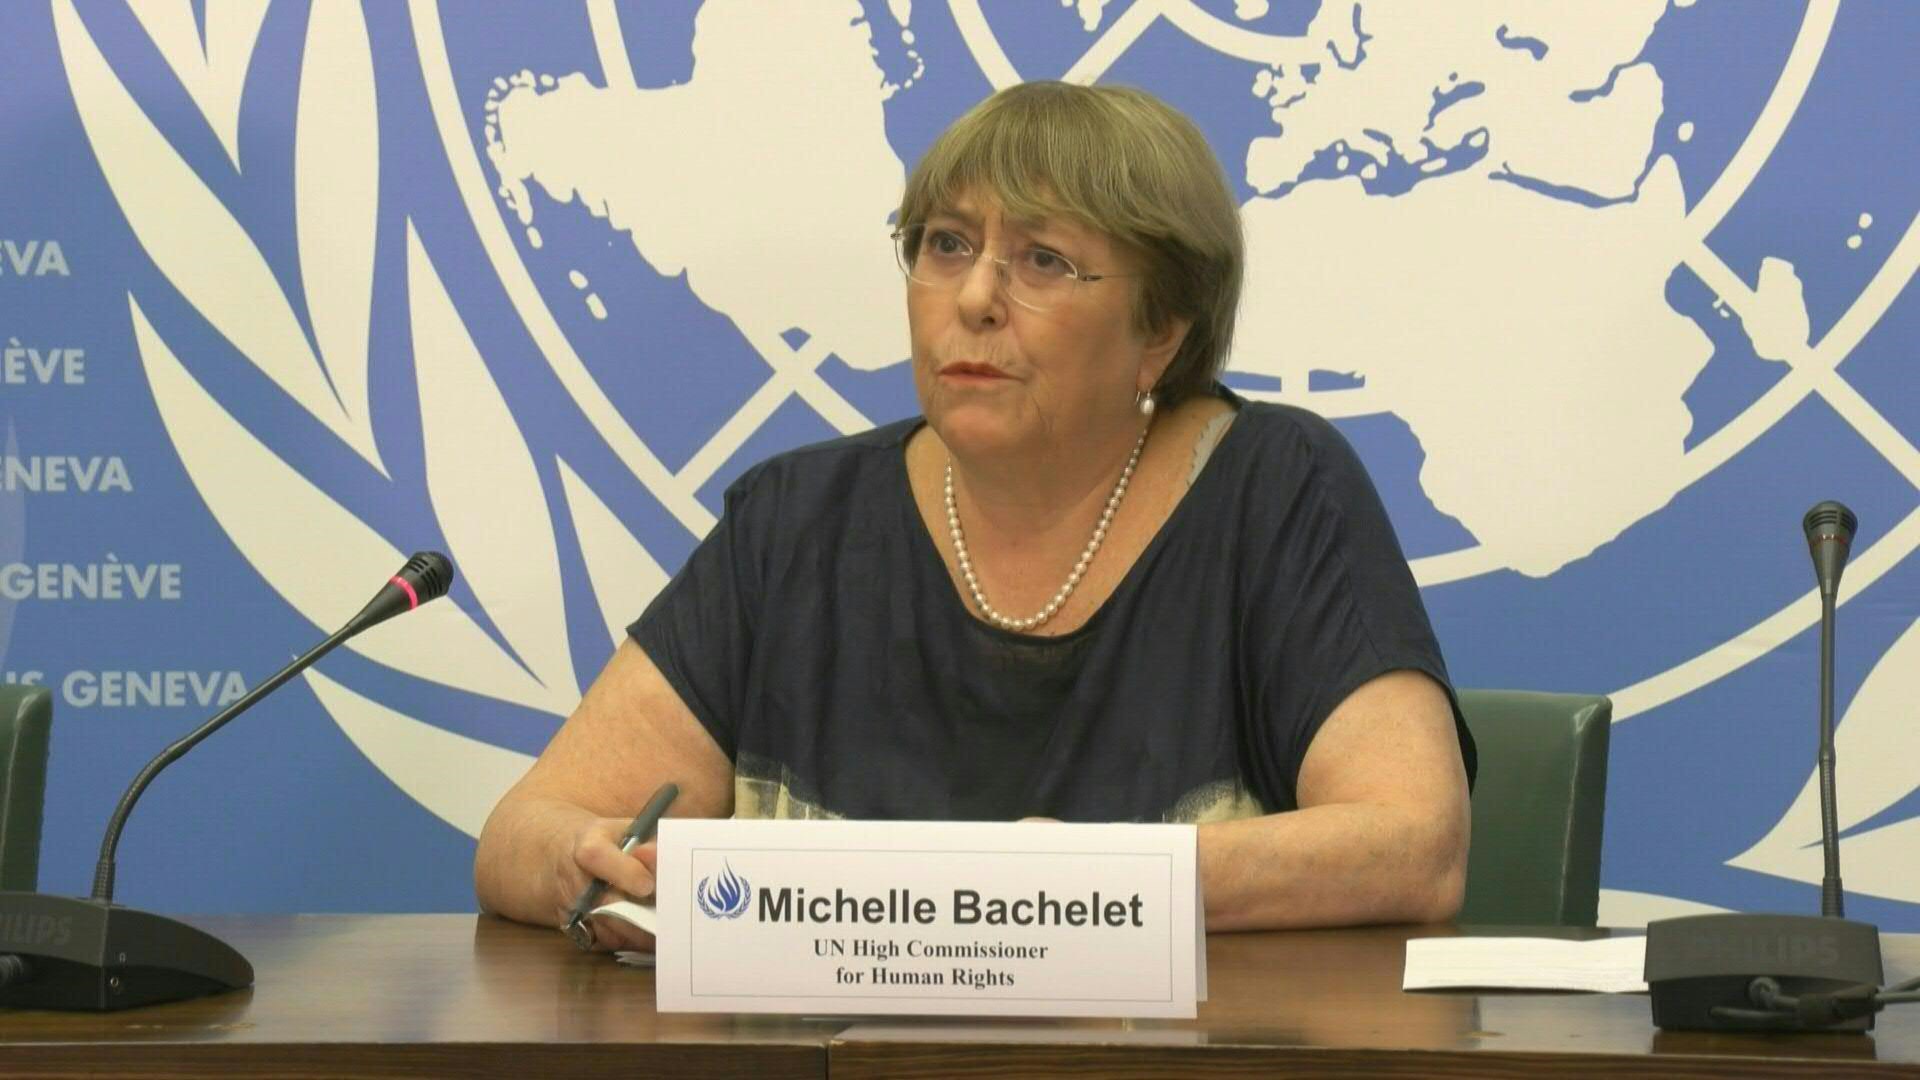 A menos de una semana de concluir su mandato como Alta Comisionada de la ONU para los Derechos Humanos, Michelle Bachelet, reconoció que estaba recibiendo "grandes presiones" realizadas por China para evitar que se publique su informe sobre la minoría musulmana uigur